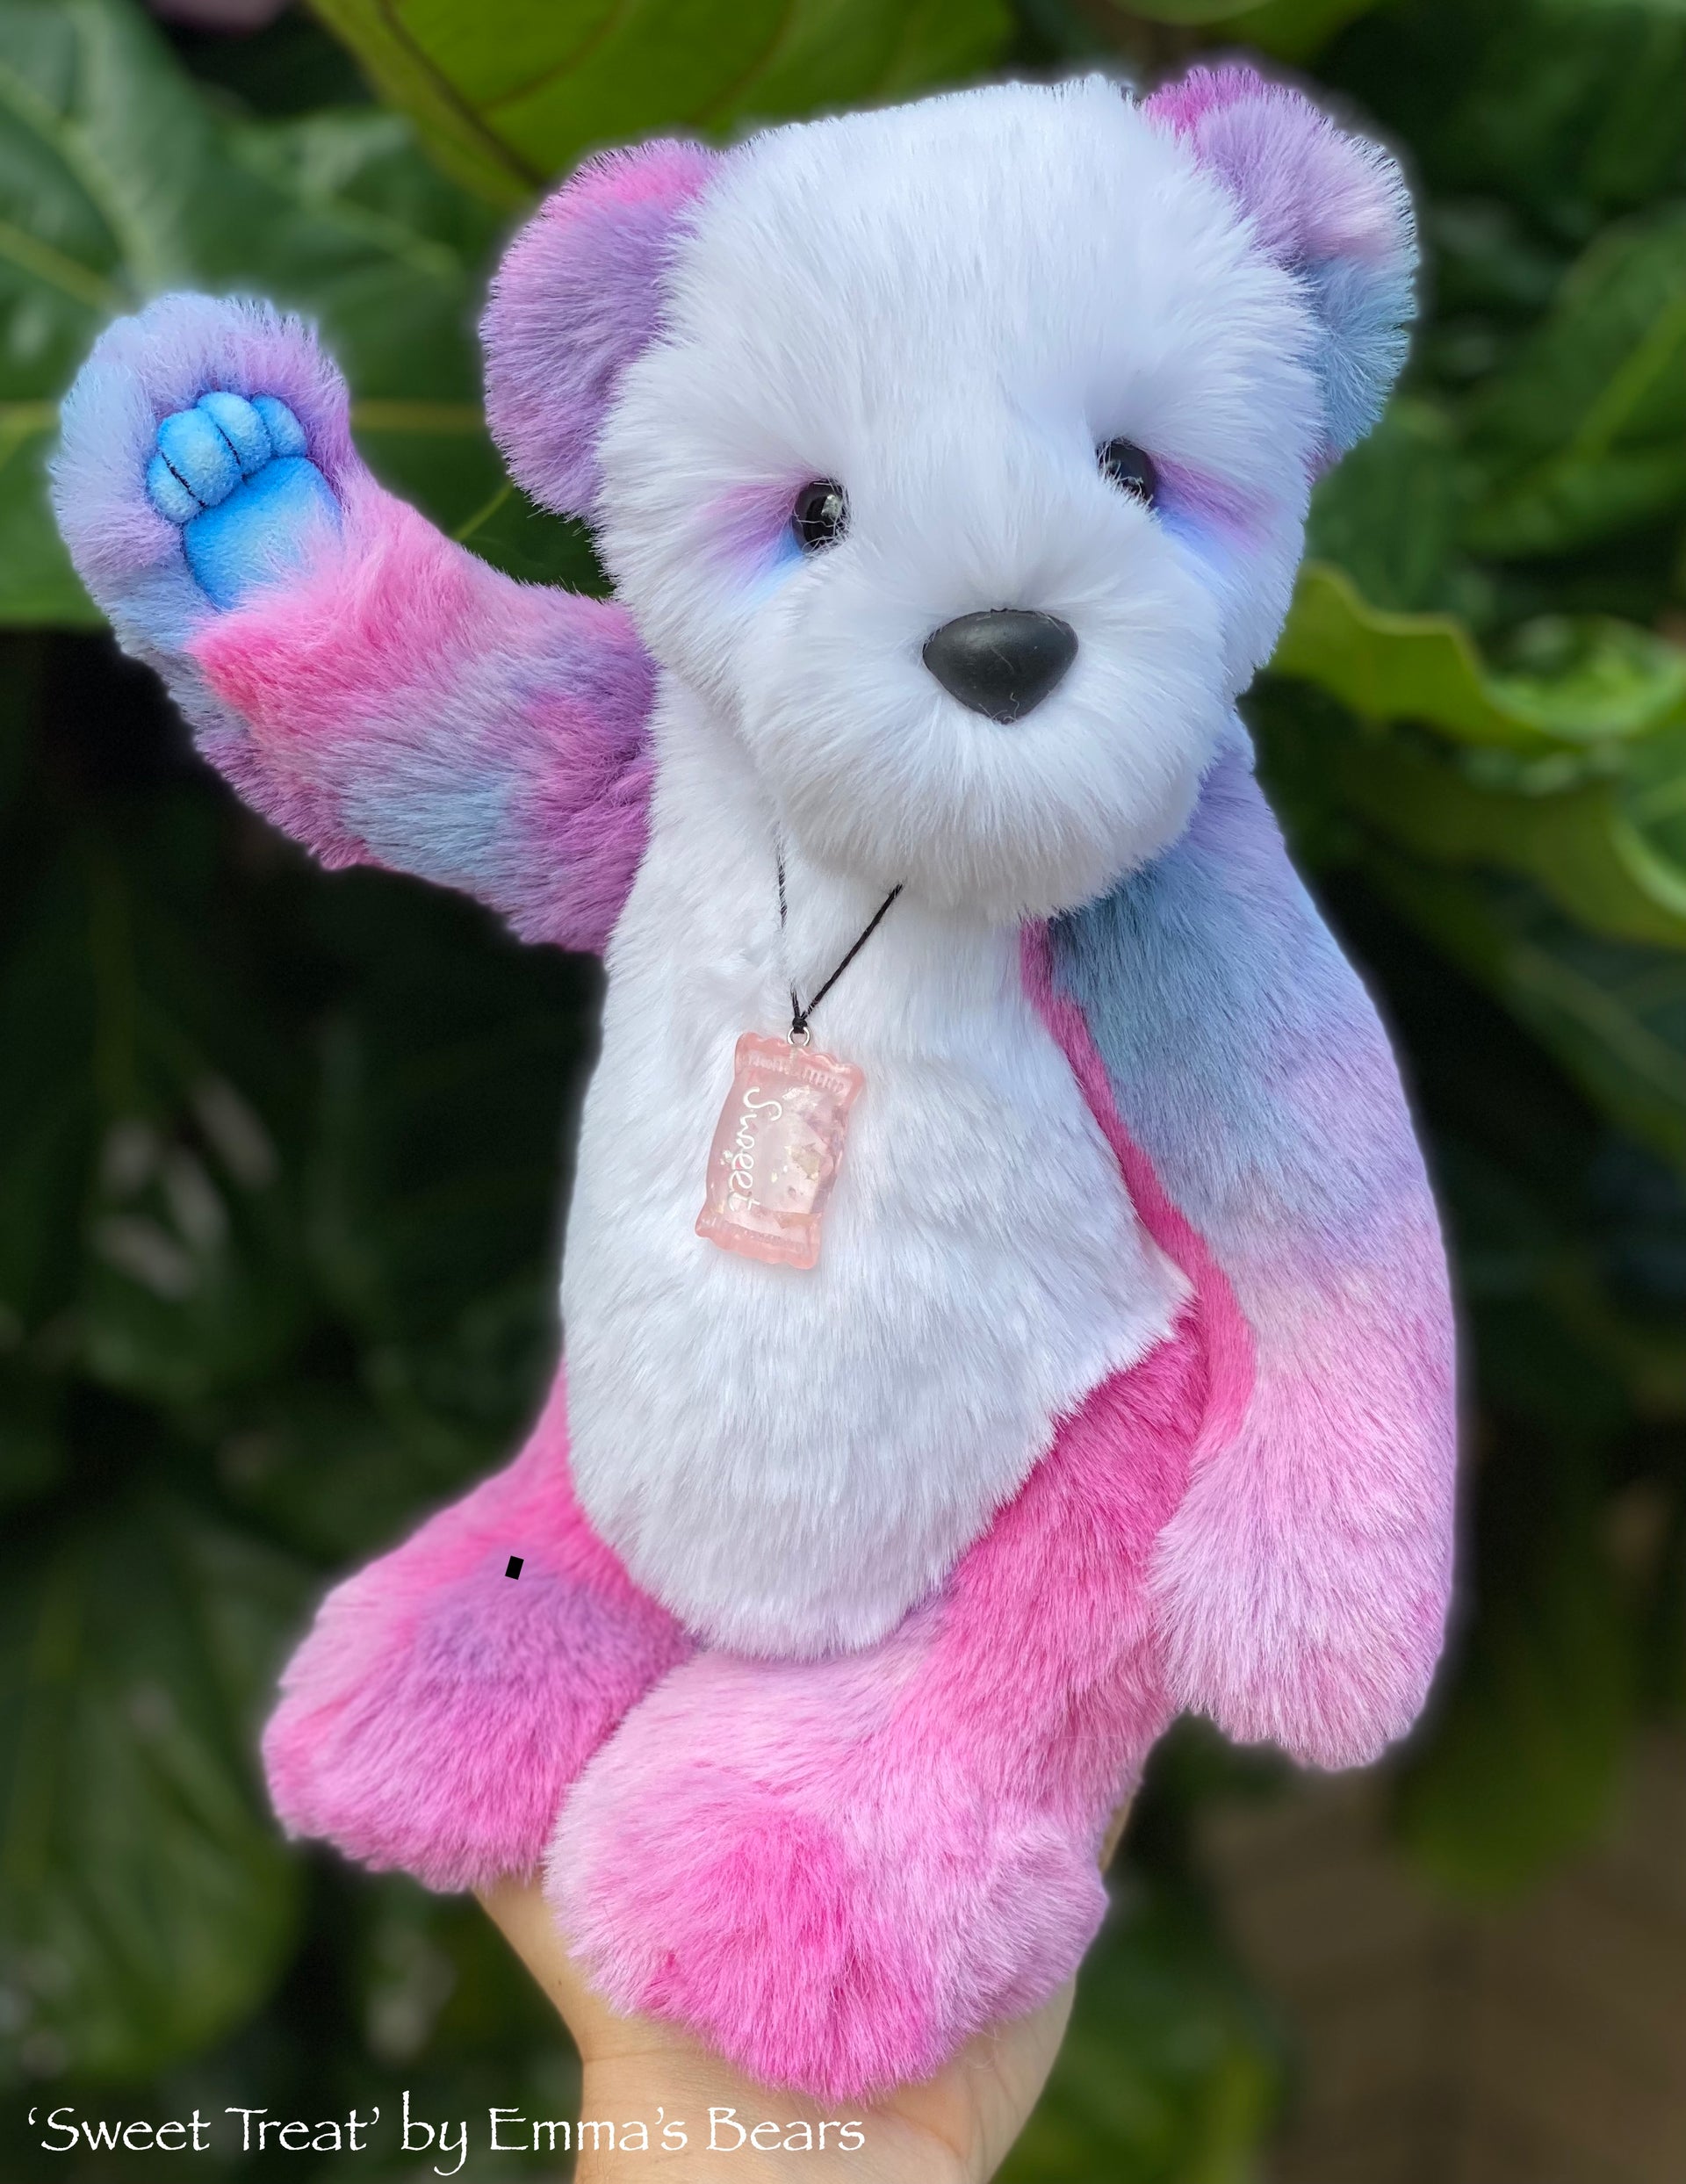 Sweet Treat - 13" faux fur Artist Bear by Emmas Bears - OOAK